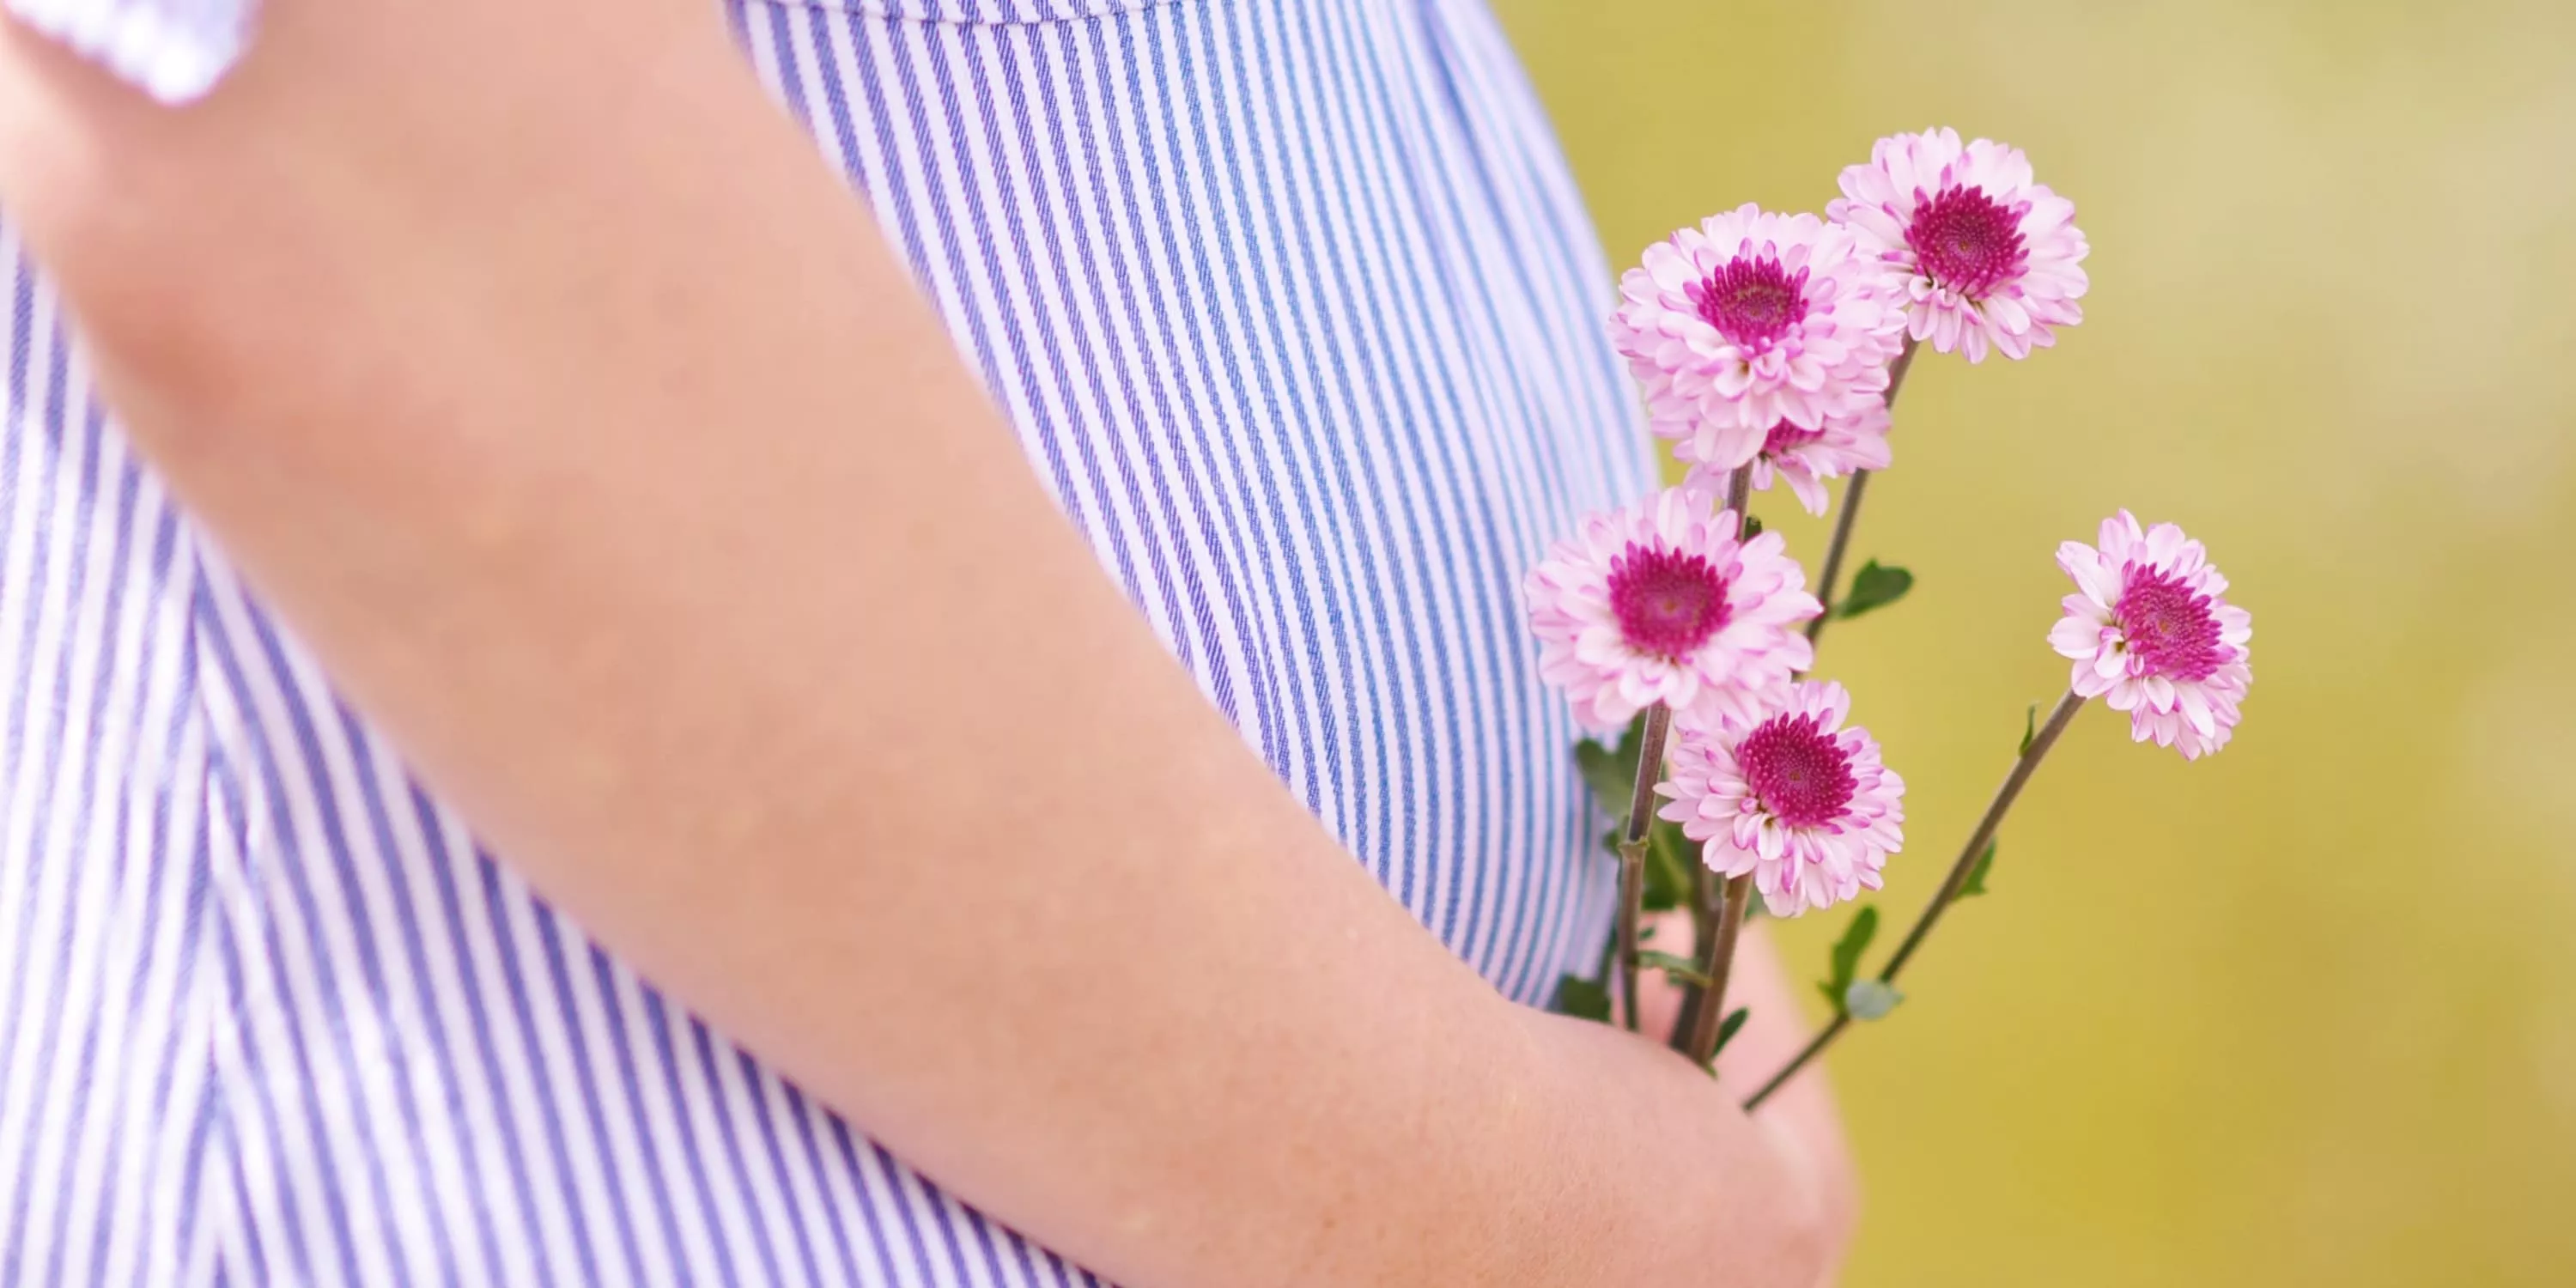 Recorte de la barriguita de una embarazada que sujeta flores.